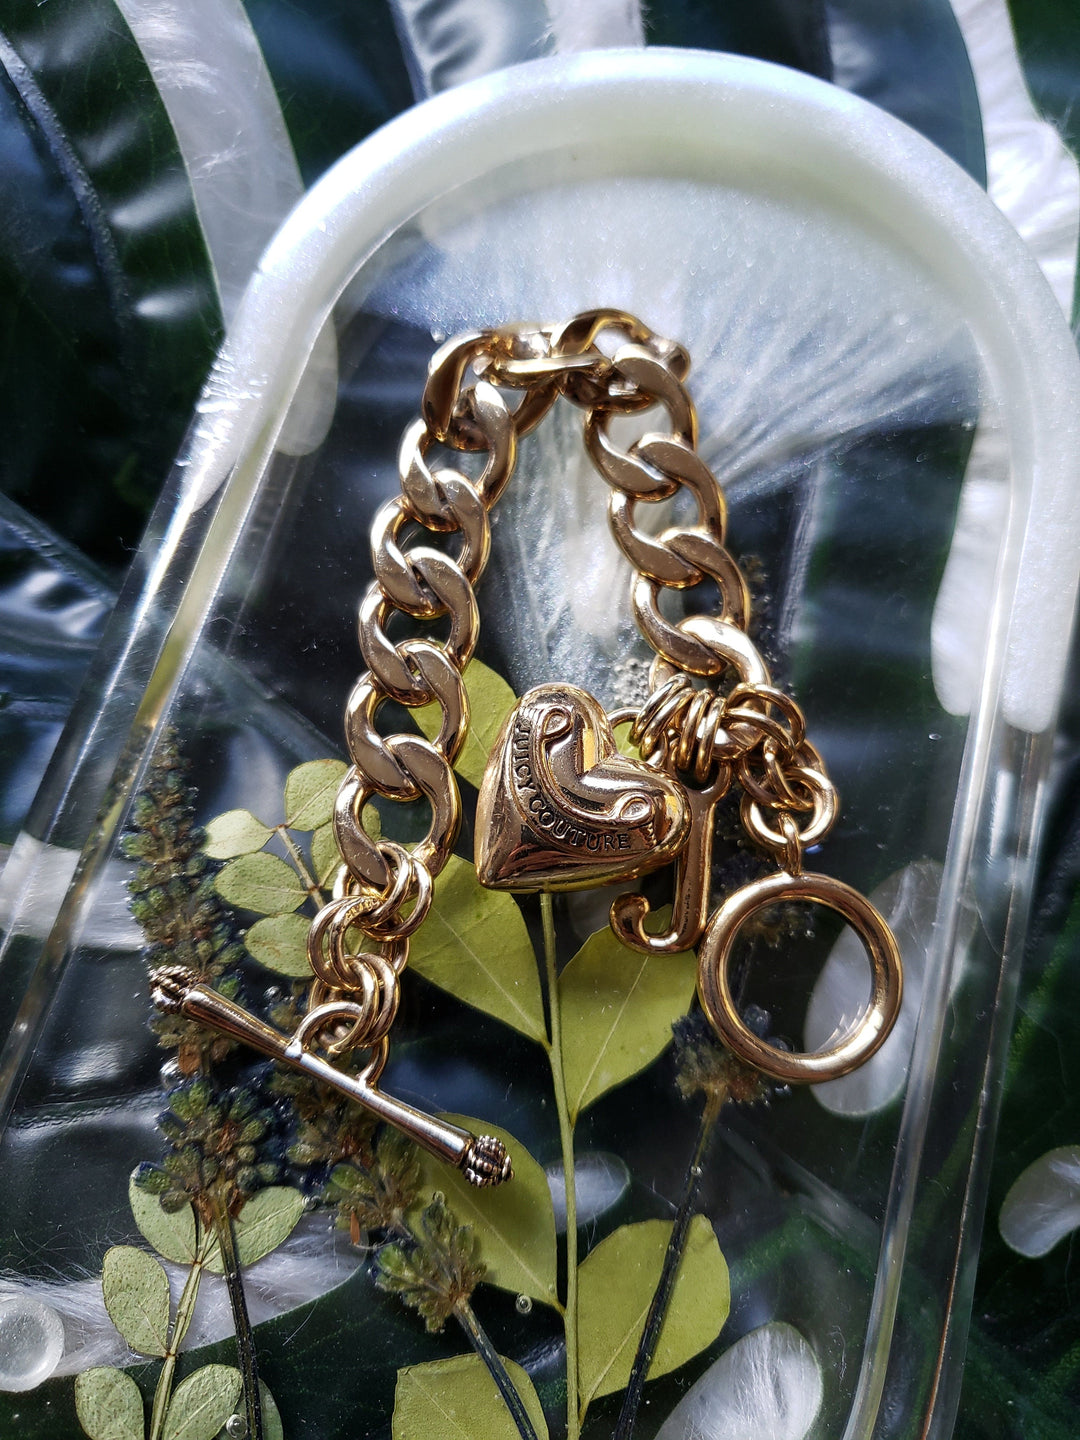 Vintage - Gold Charm Chain Bracelet